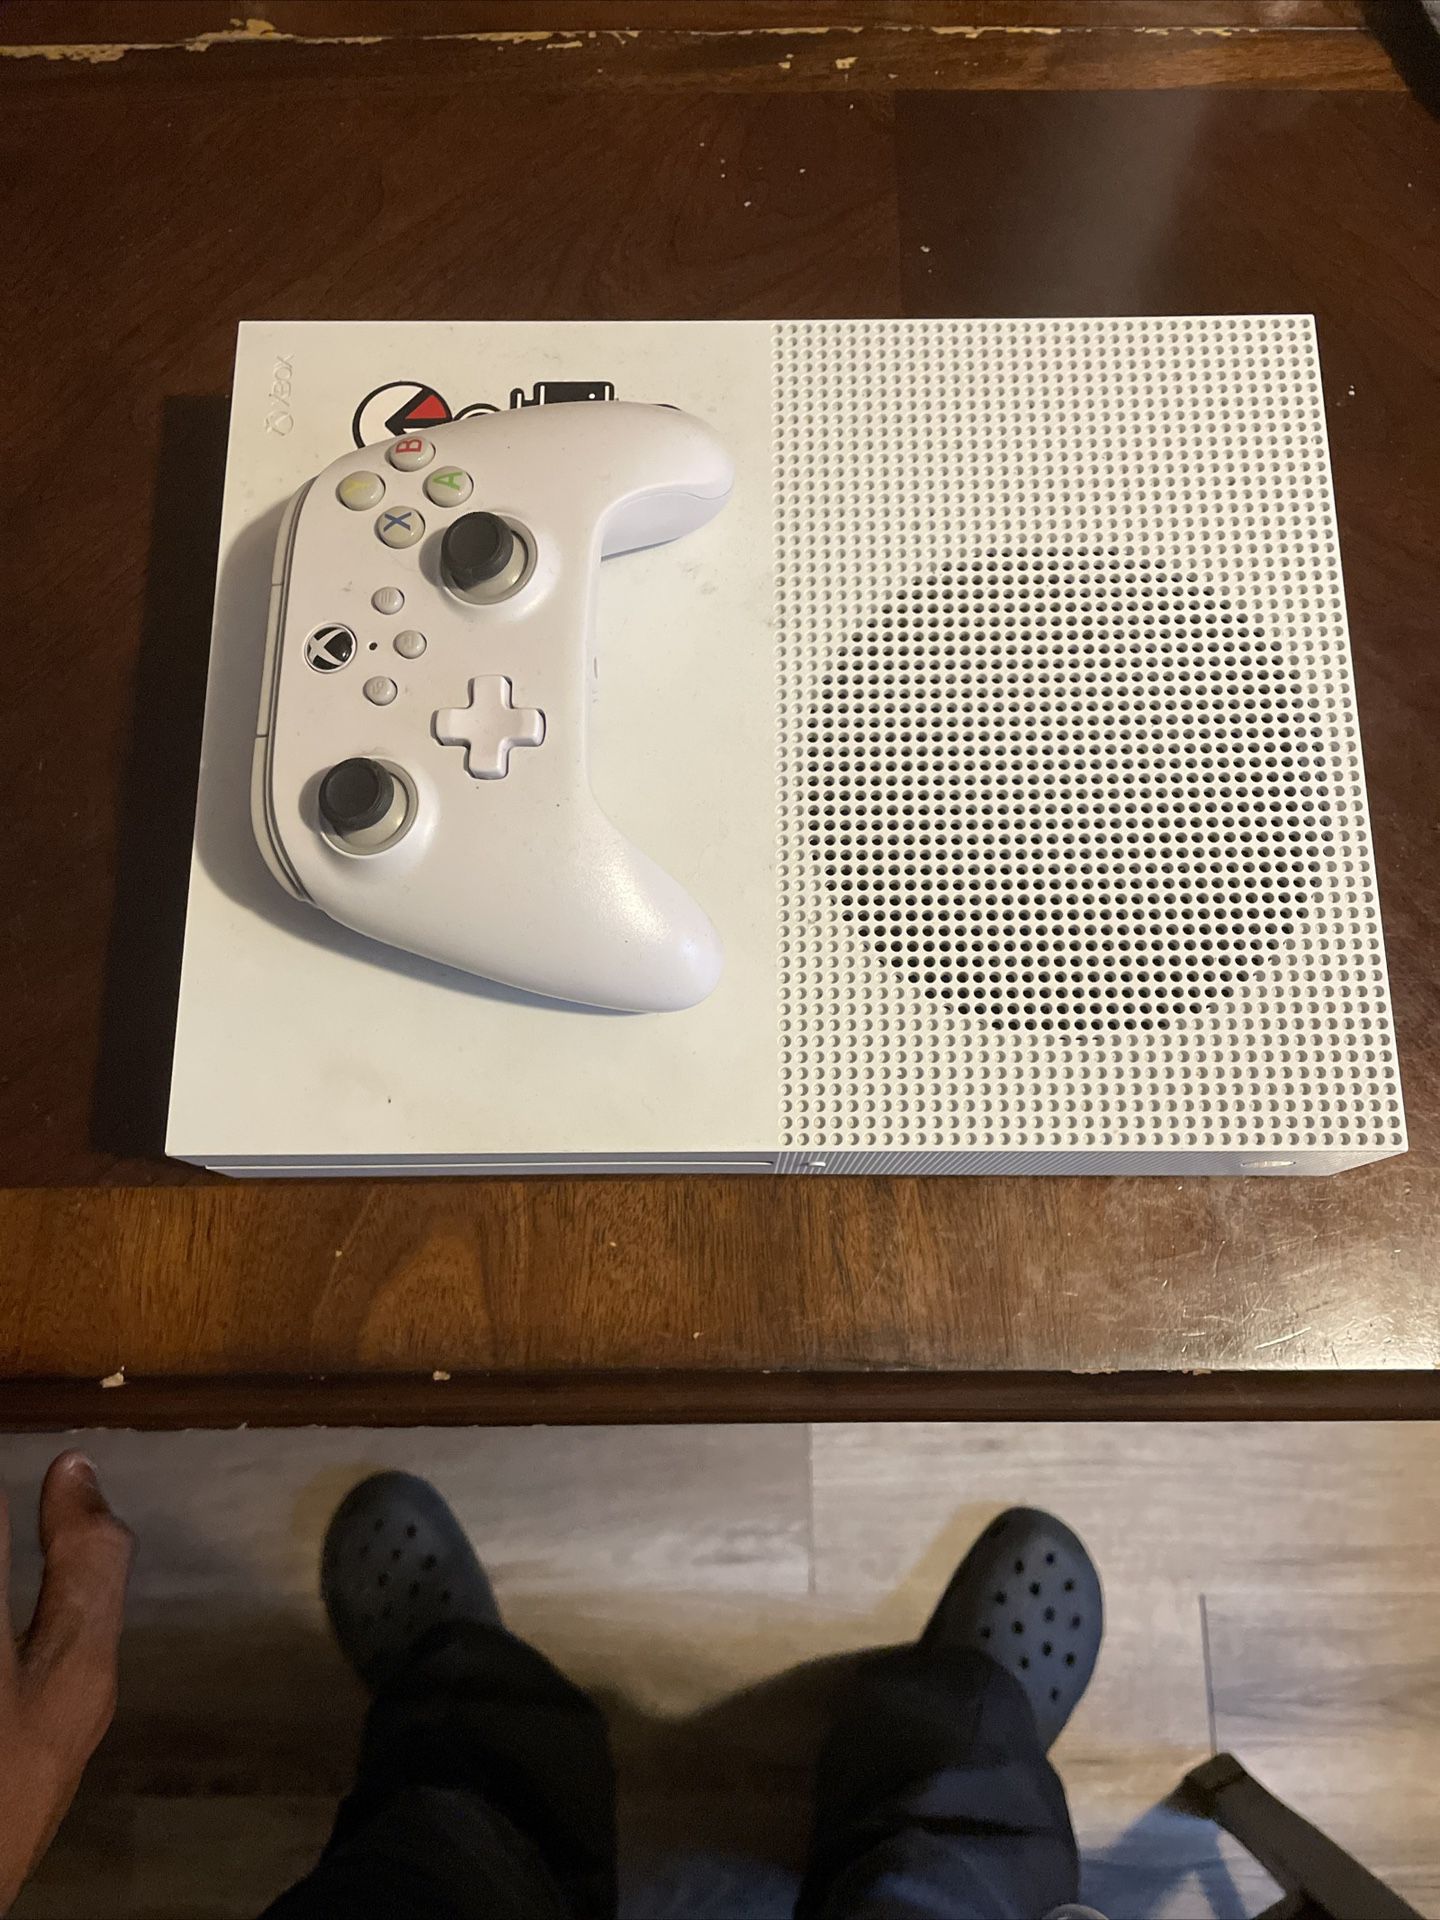 Xbox One S 1tb Console - White